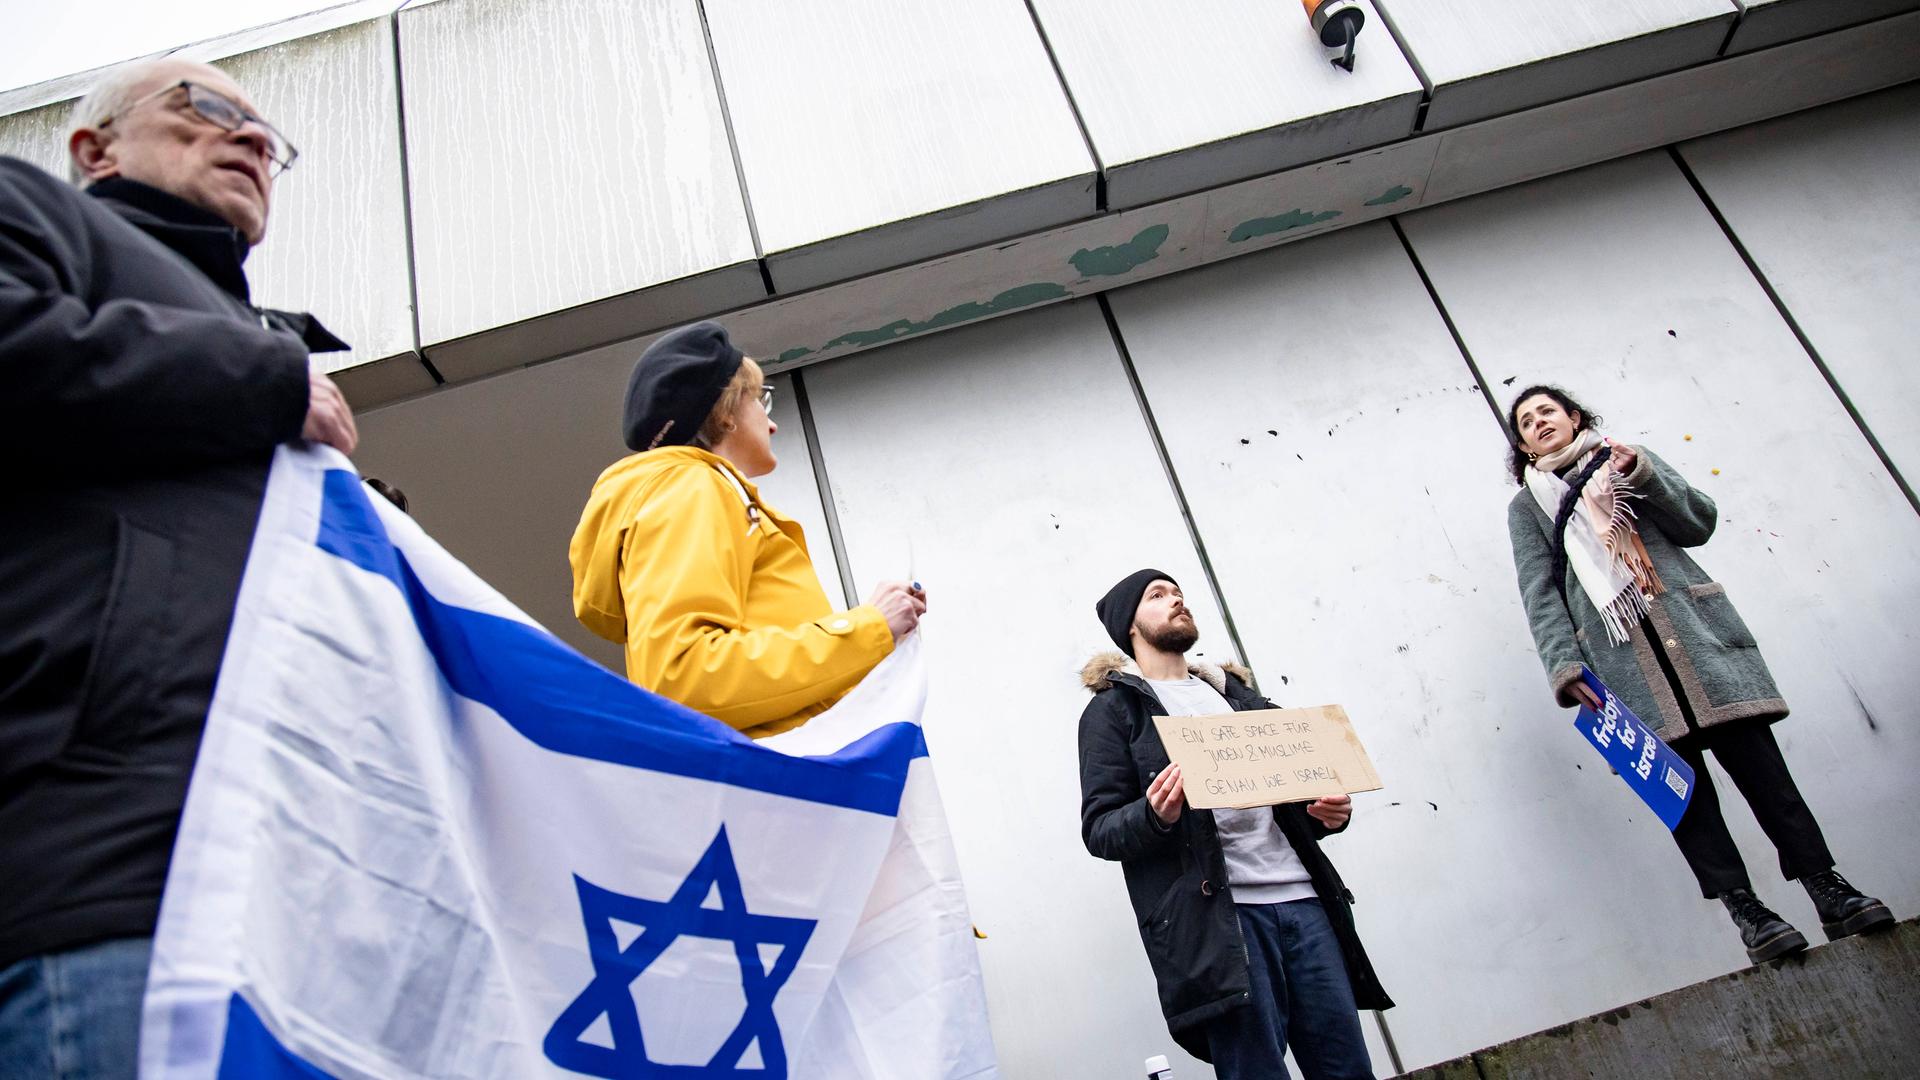 Aufnahme von schräg unten. Links eine Person, die eine Israel-Flagge hält. 